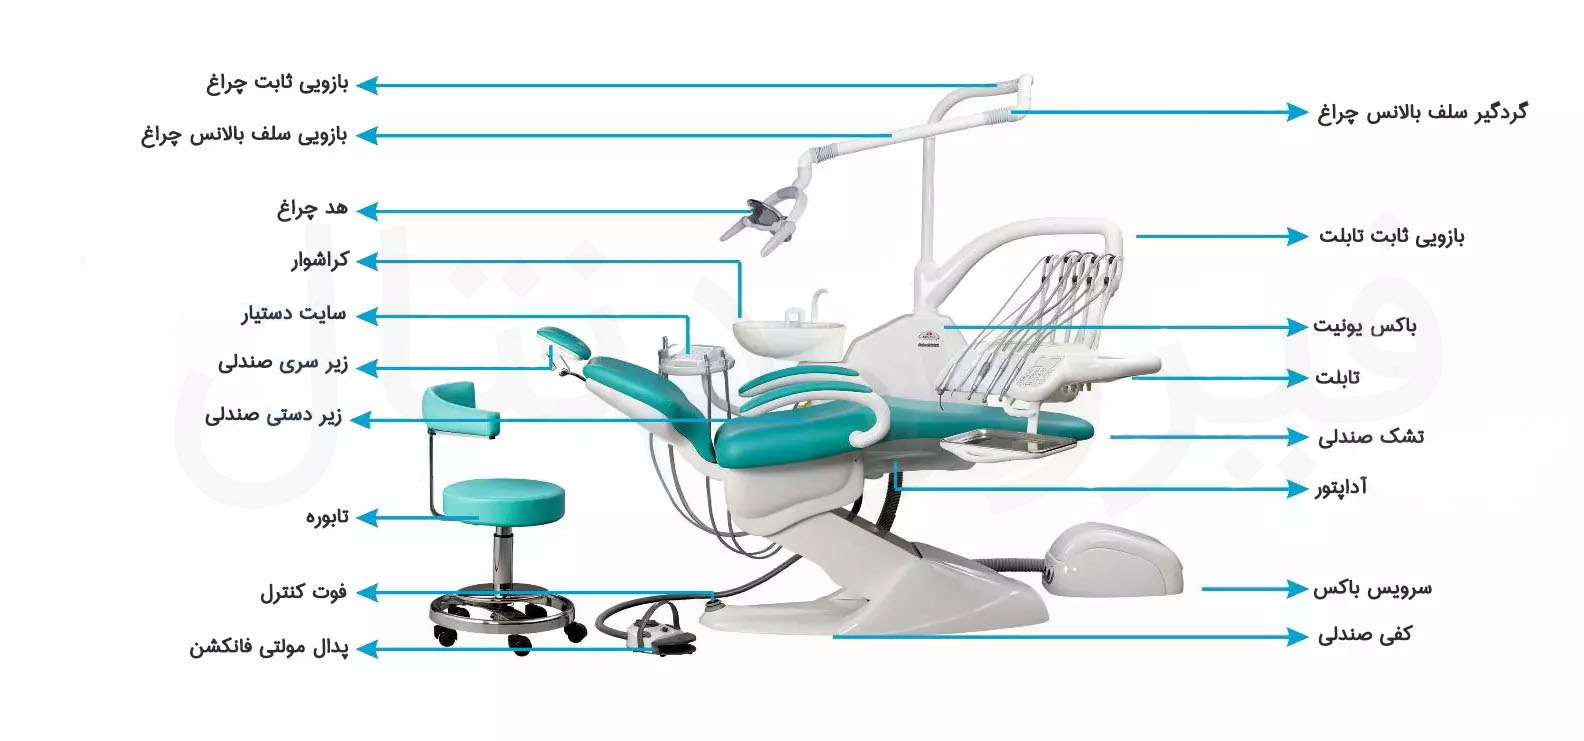 یونیت دندانپزشکی و اجزای آن | تجهیزات دندانپزشکی فیروز دنتال